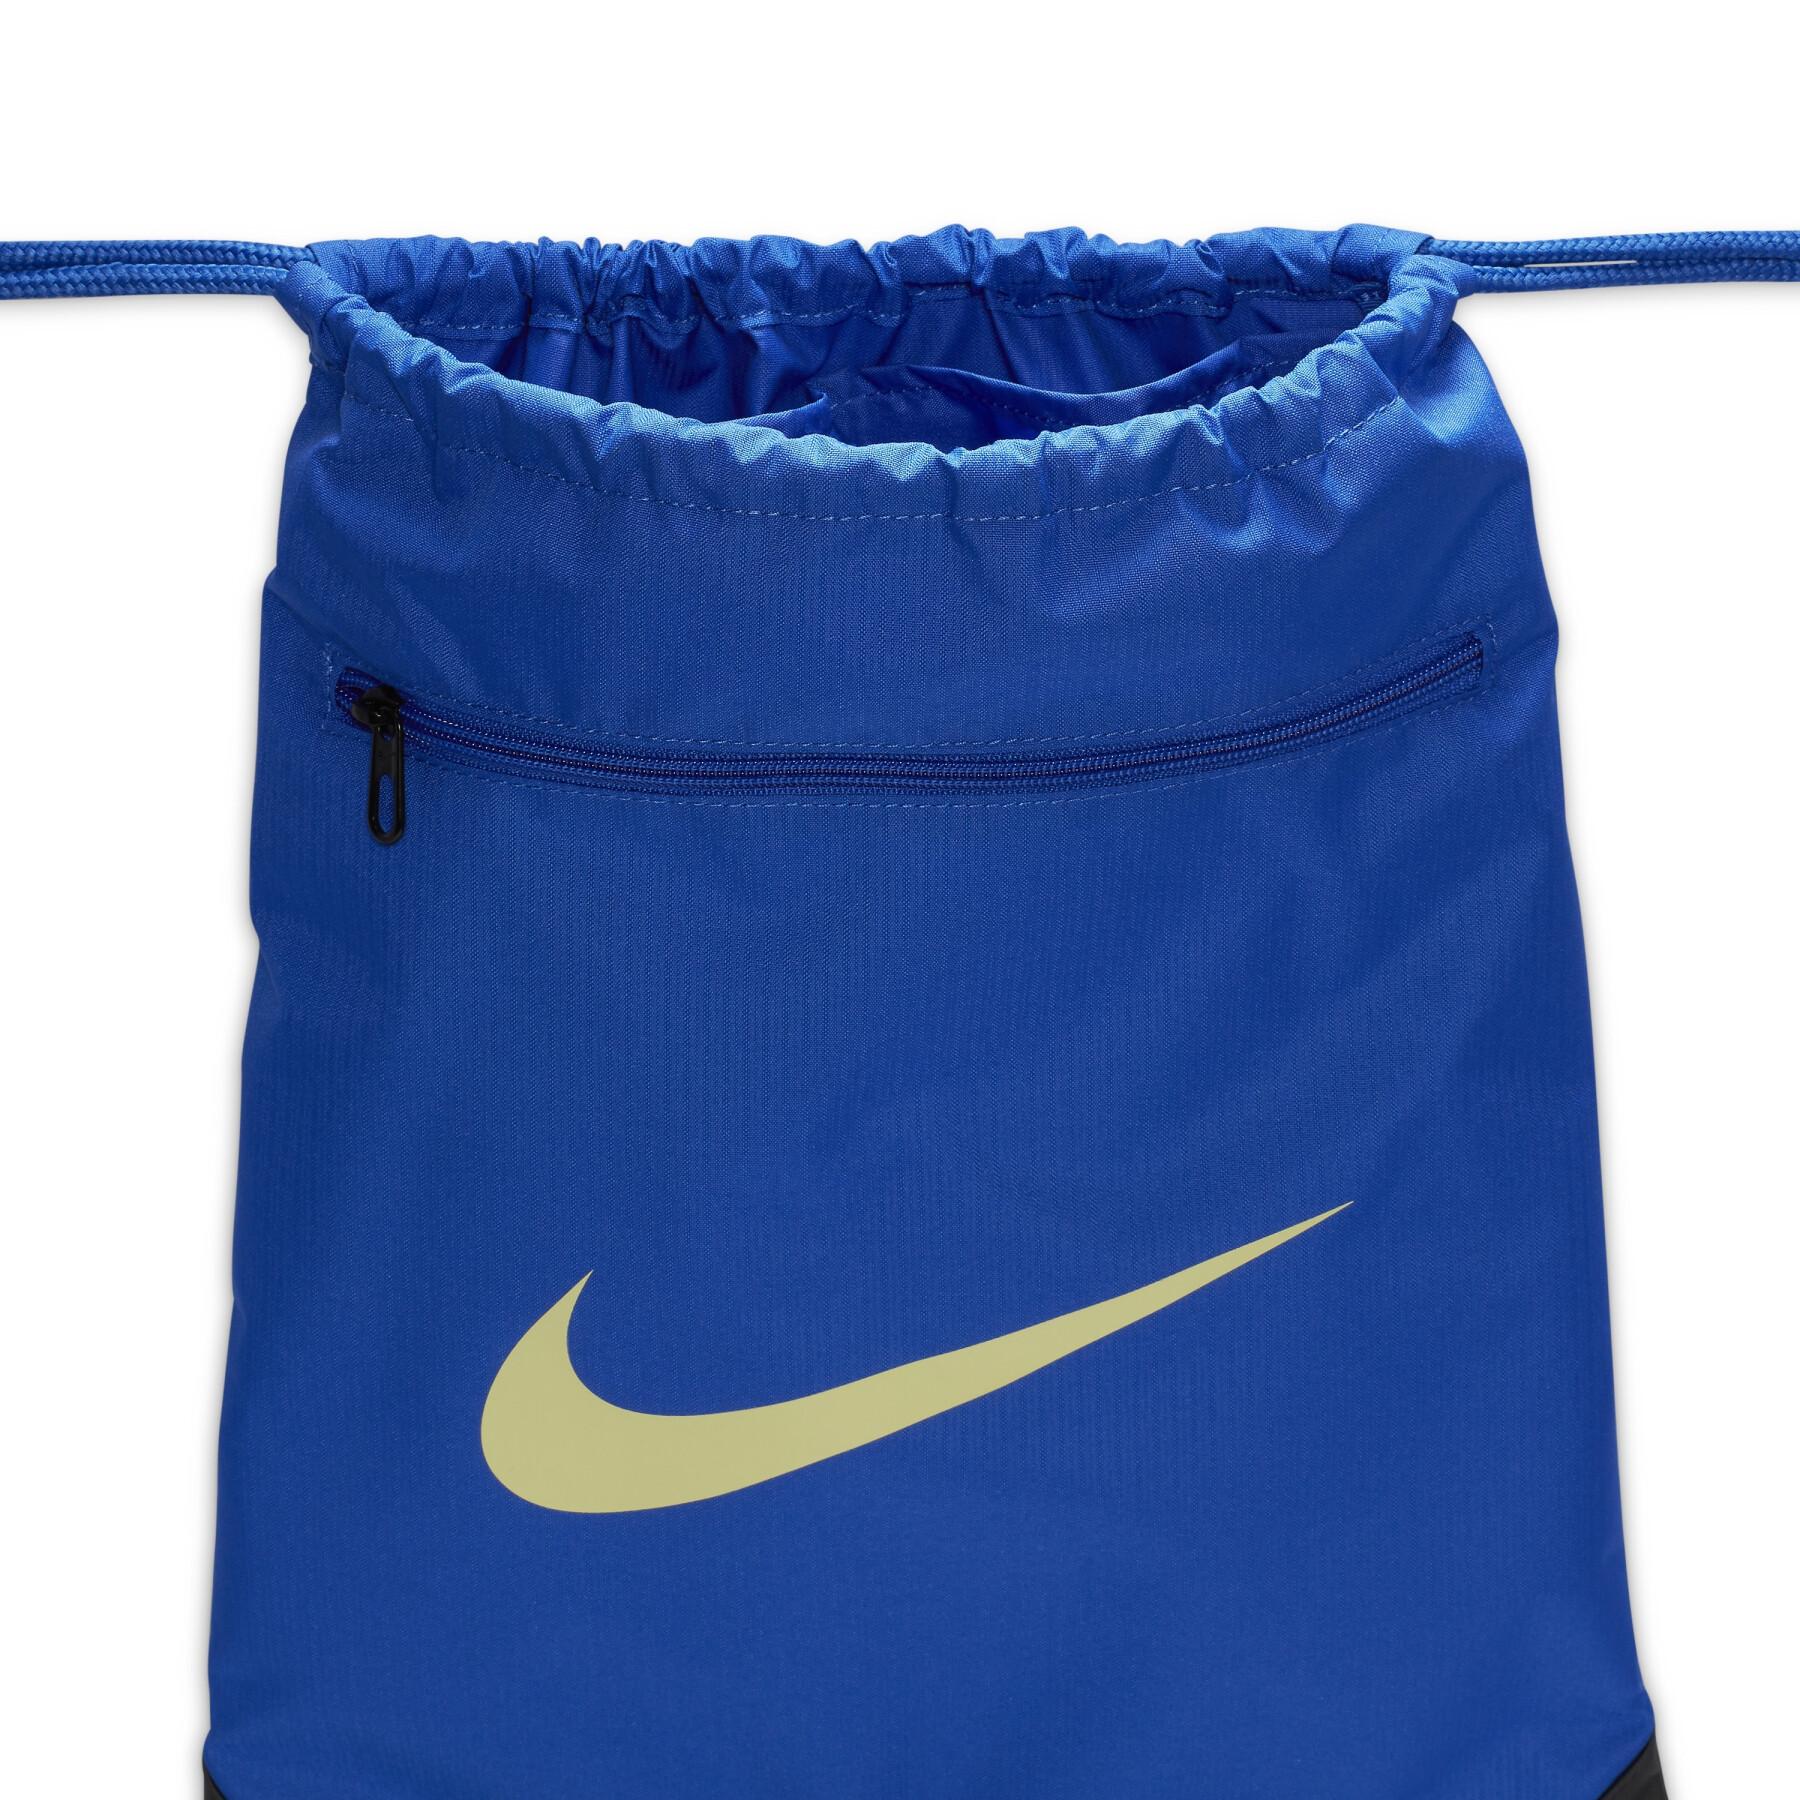 Accessory bag Nike Brasilia 9.5